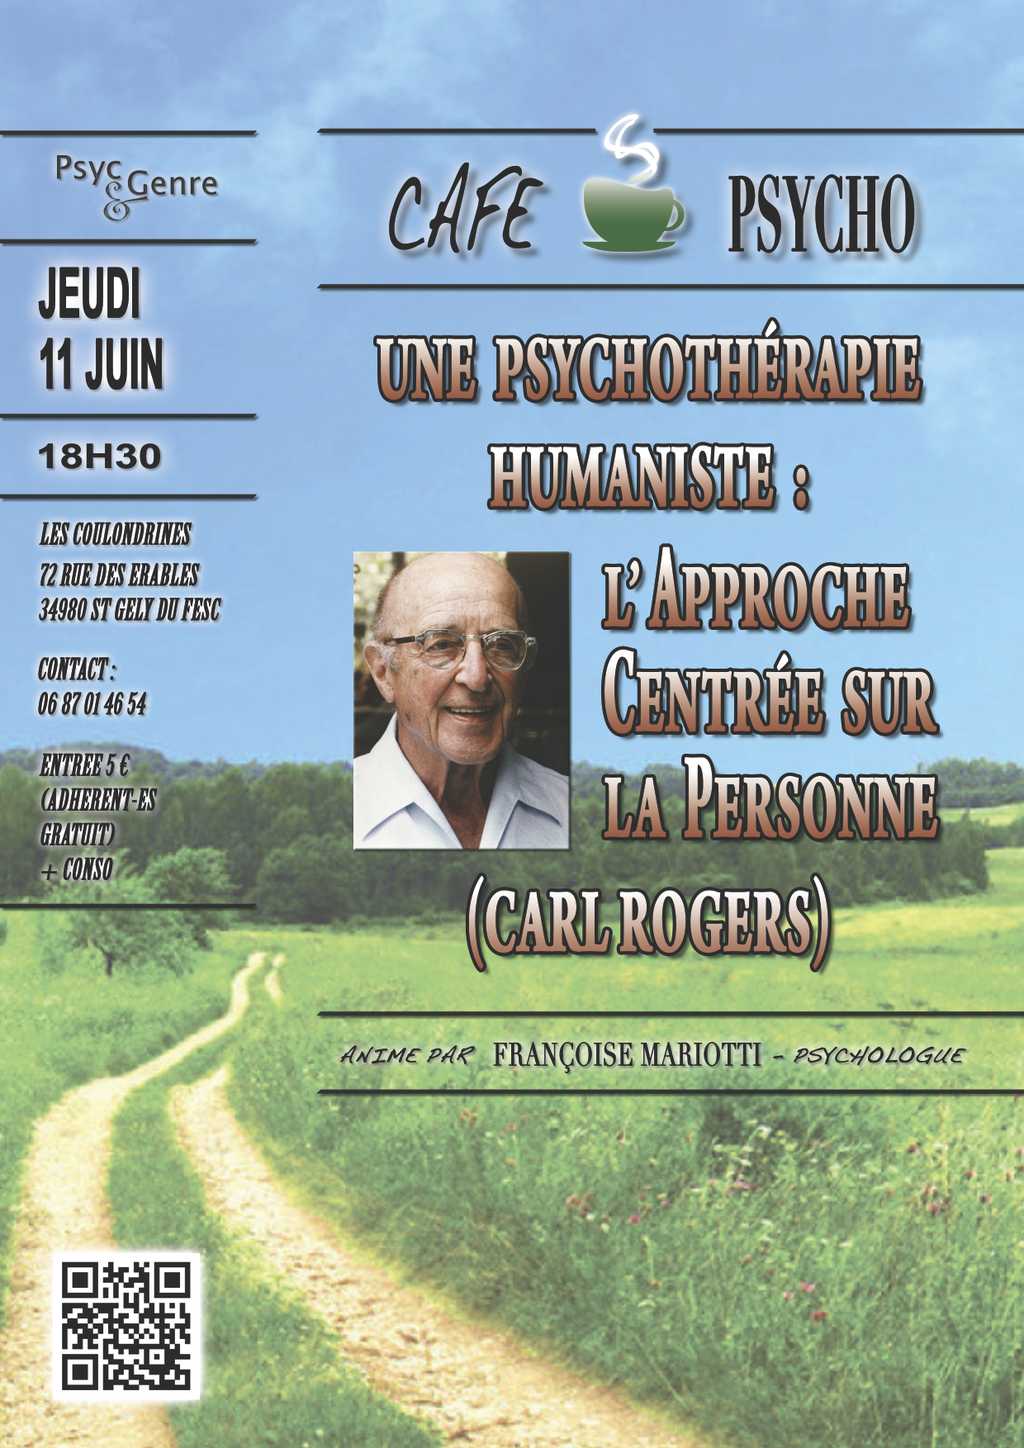 Café psycho : "Une psychothérapie humaniste : l'Approche Centrée sur la Personne (Carl Rogers)"